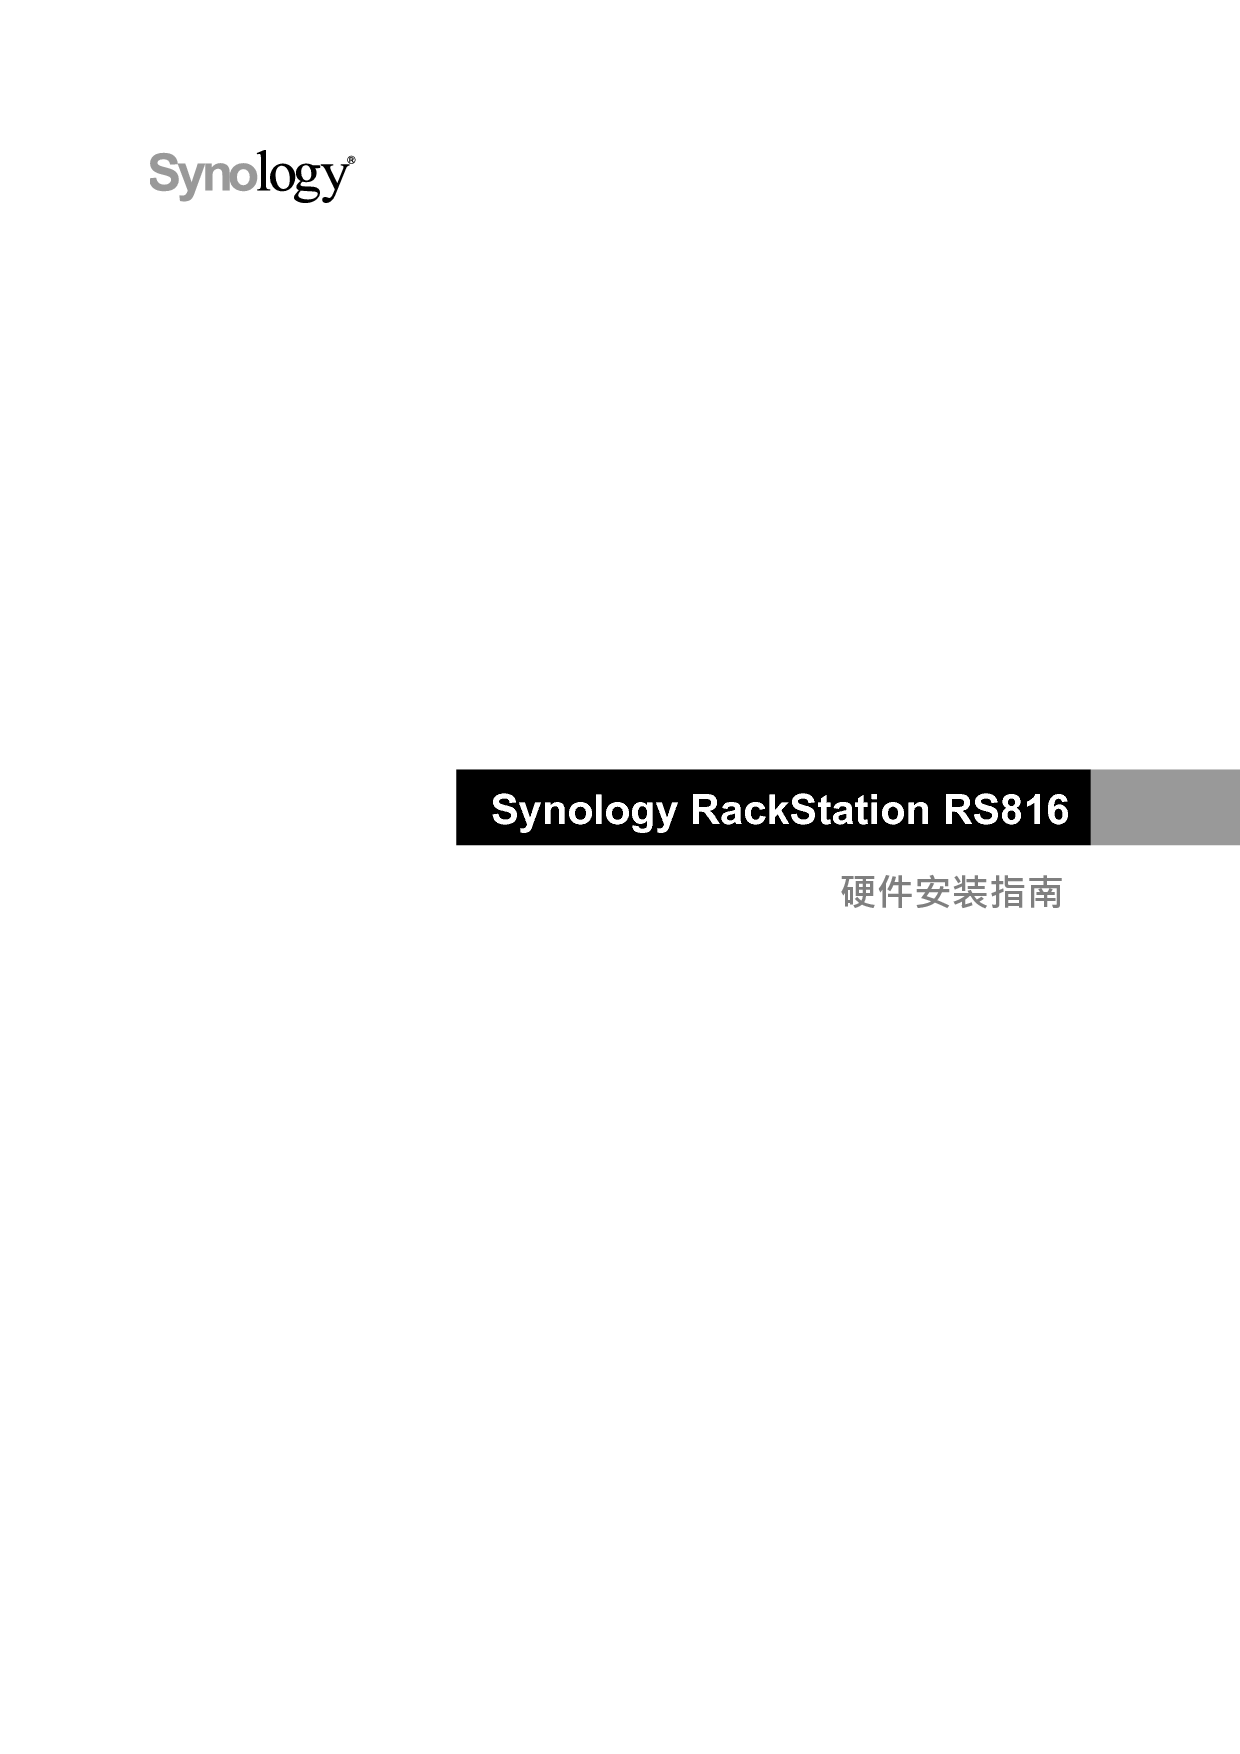 群晖 Synology RS816 快速安装指南 封面